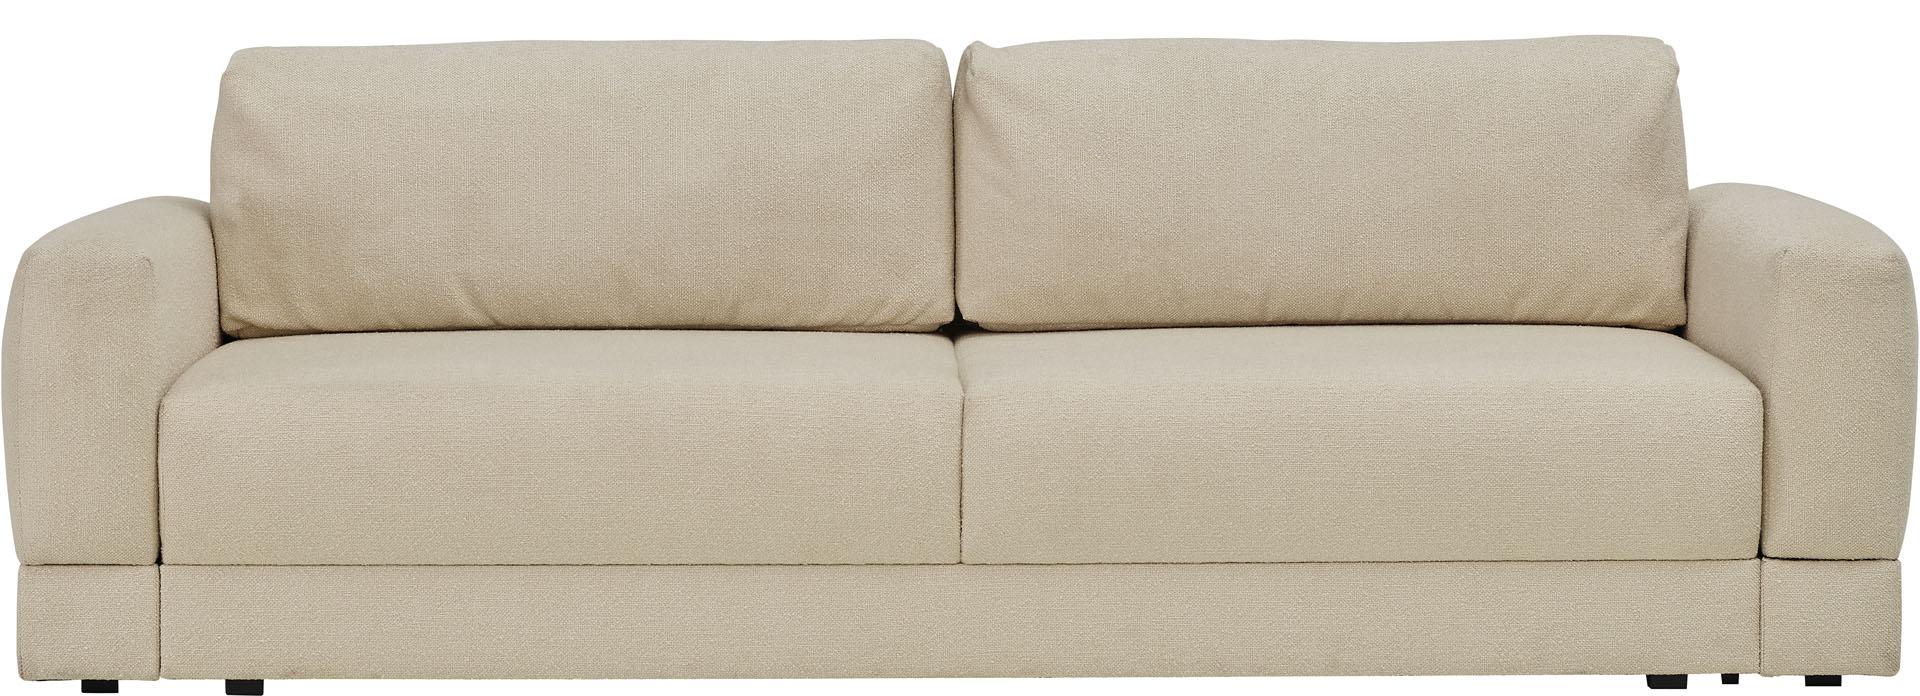 3-seater sofa Stello